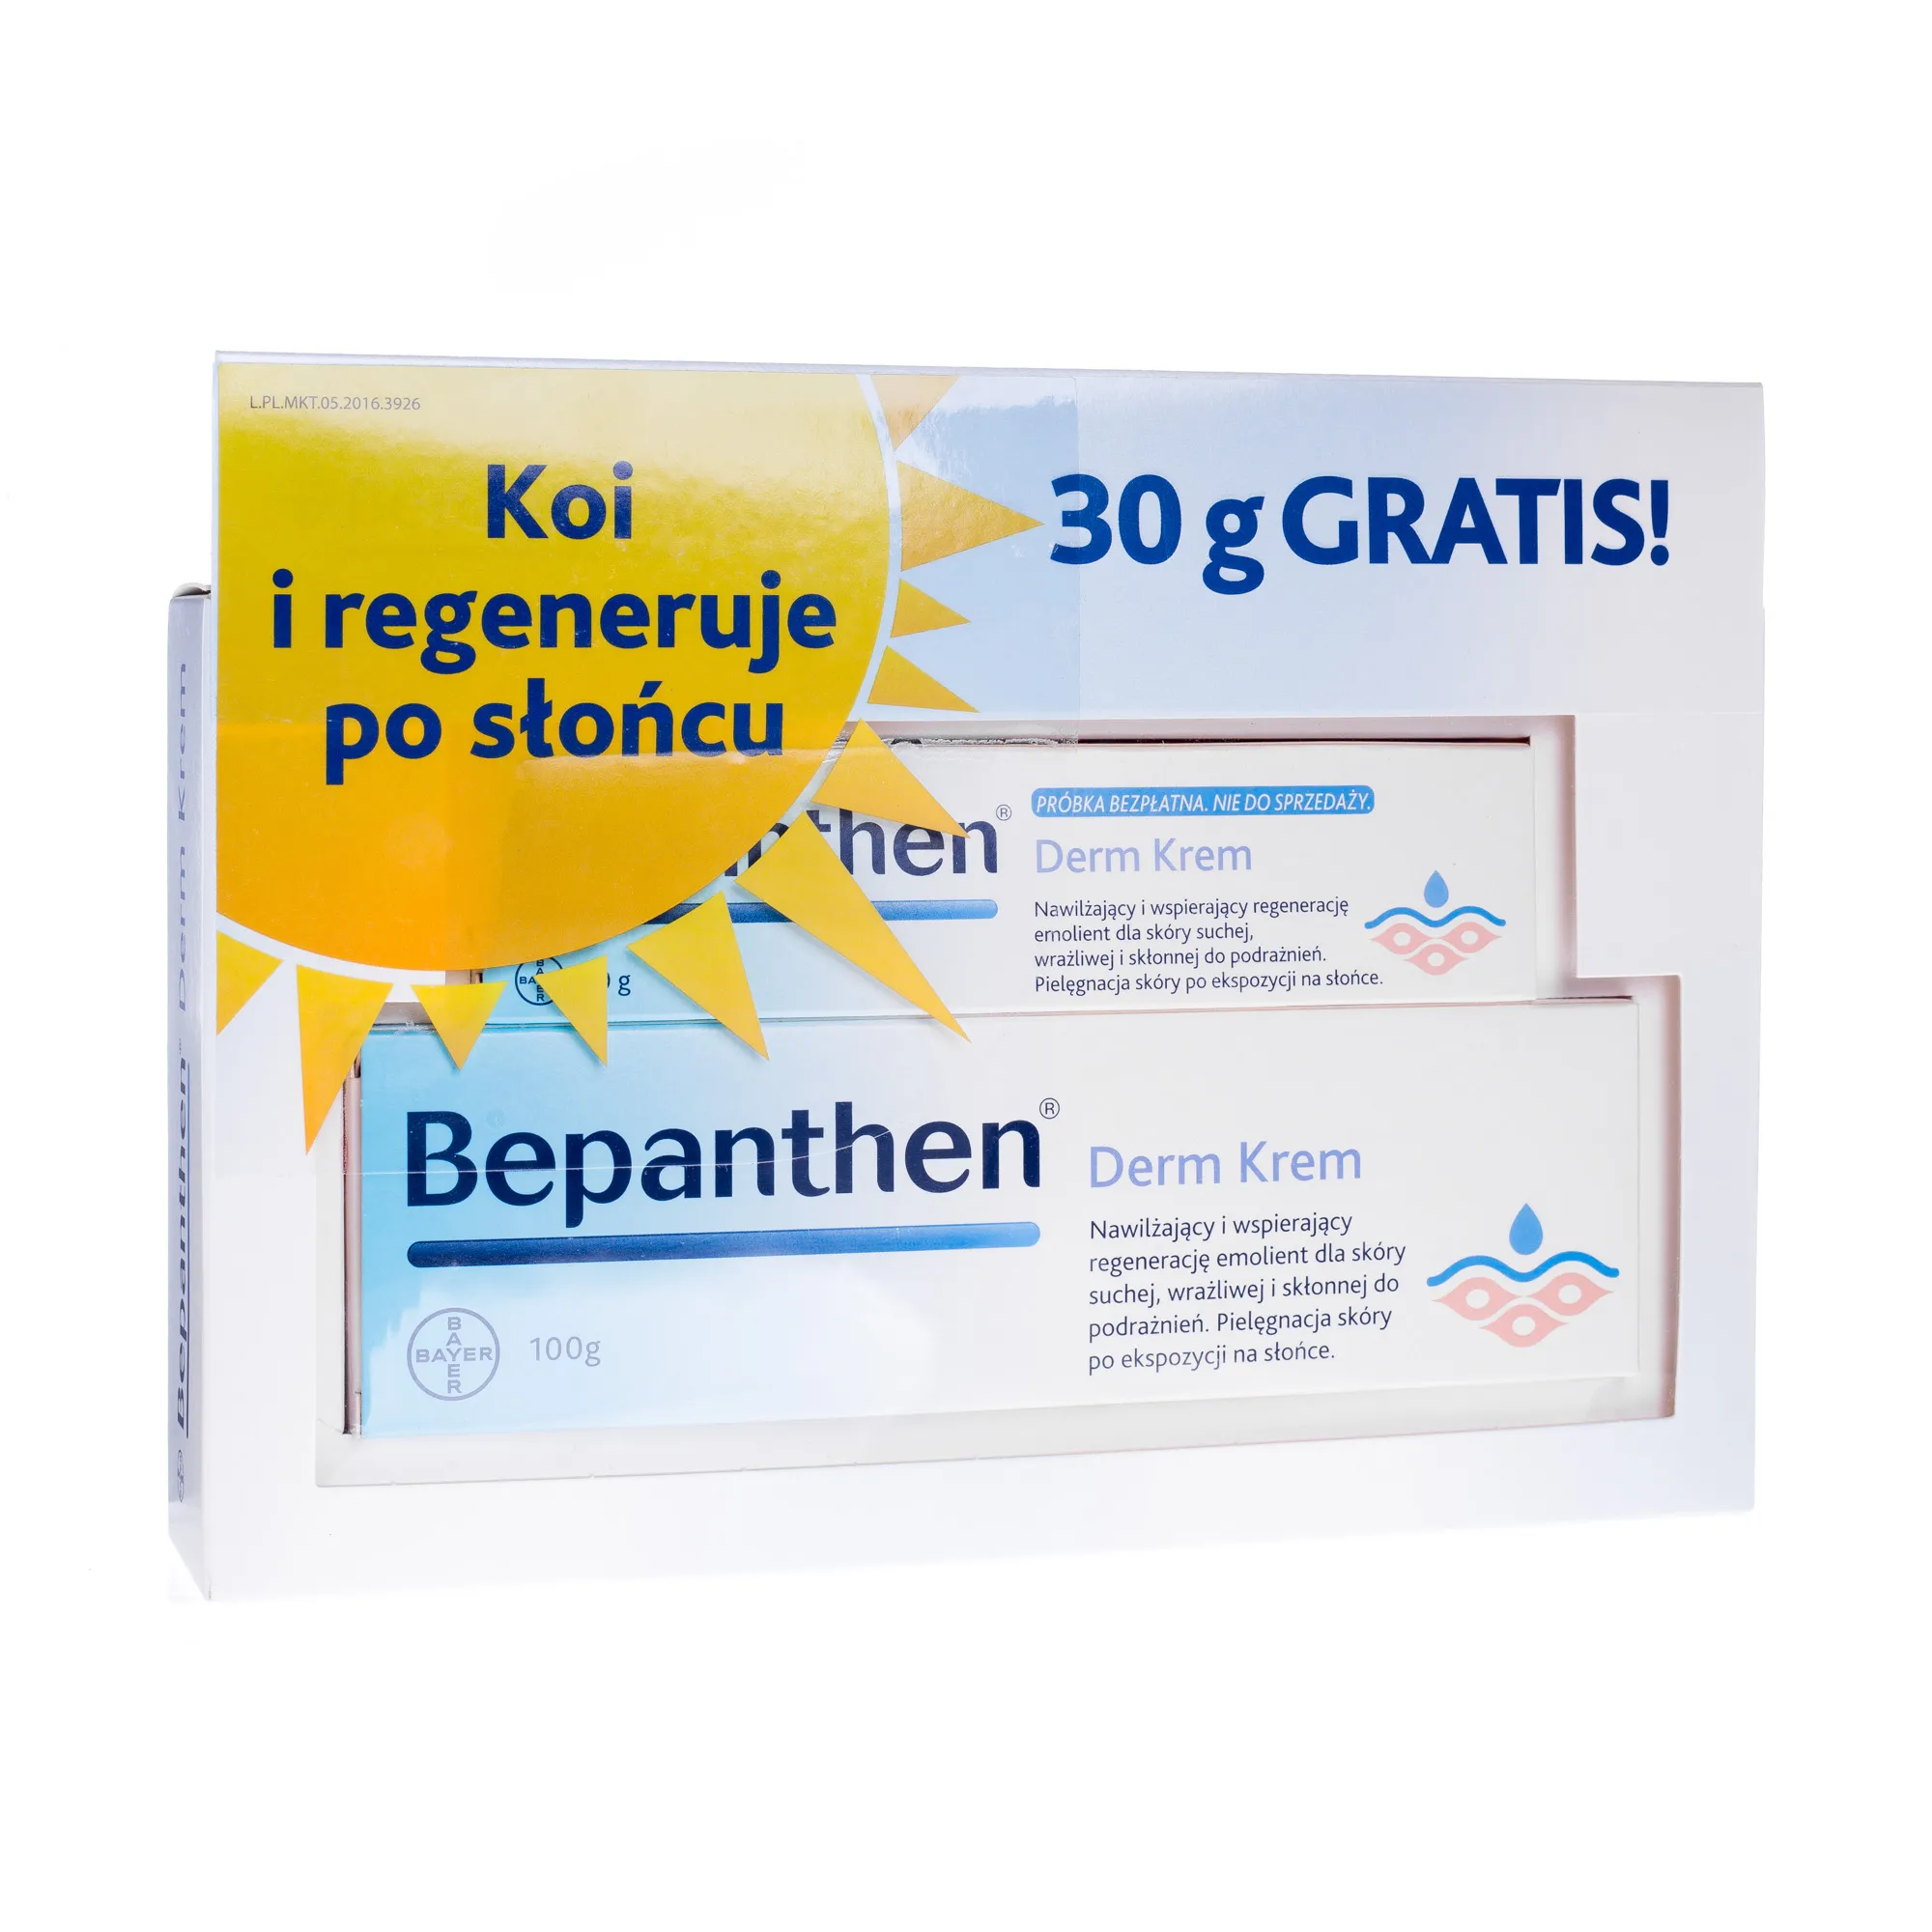 Bepanthen Derm Krem, zestaw promocyjny, 100 g + 30 g gratis 